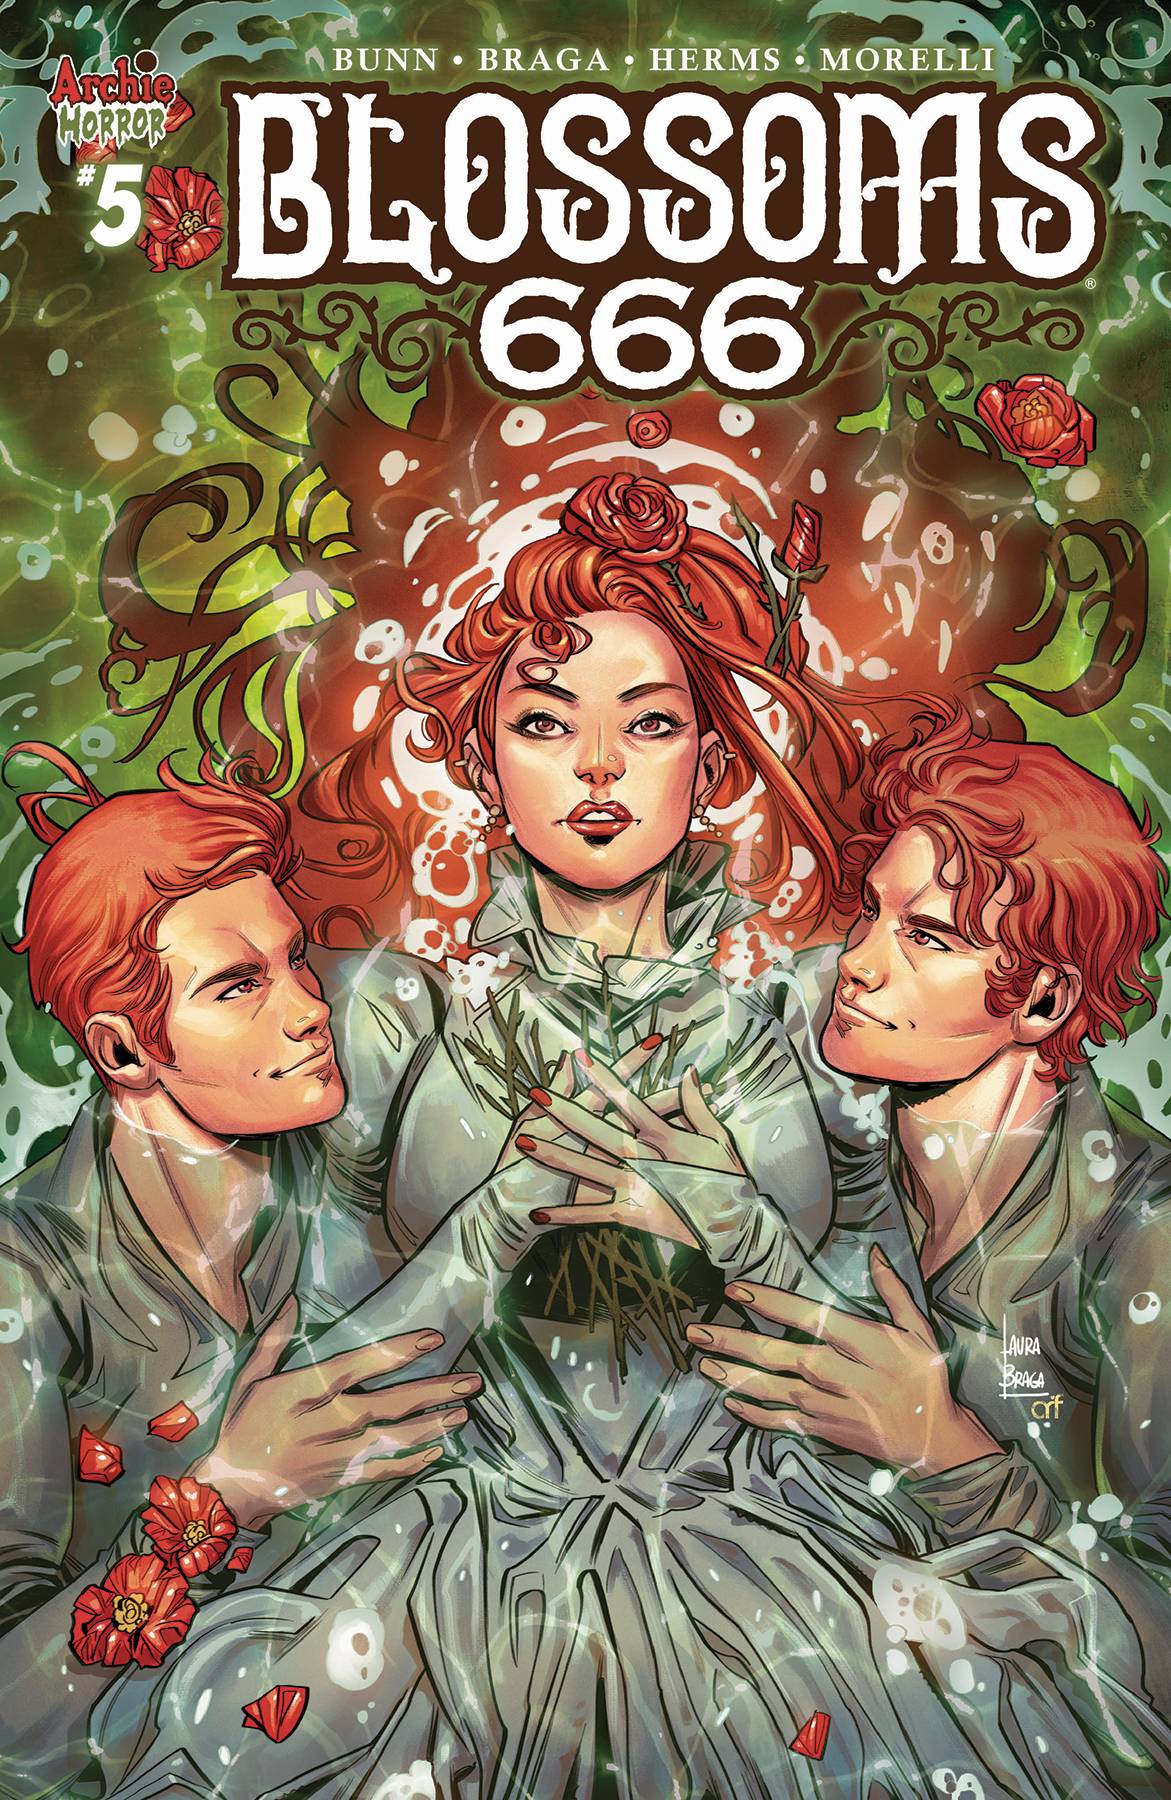 Blossoms 666 #5 Cover A Braga (Of 5)